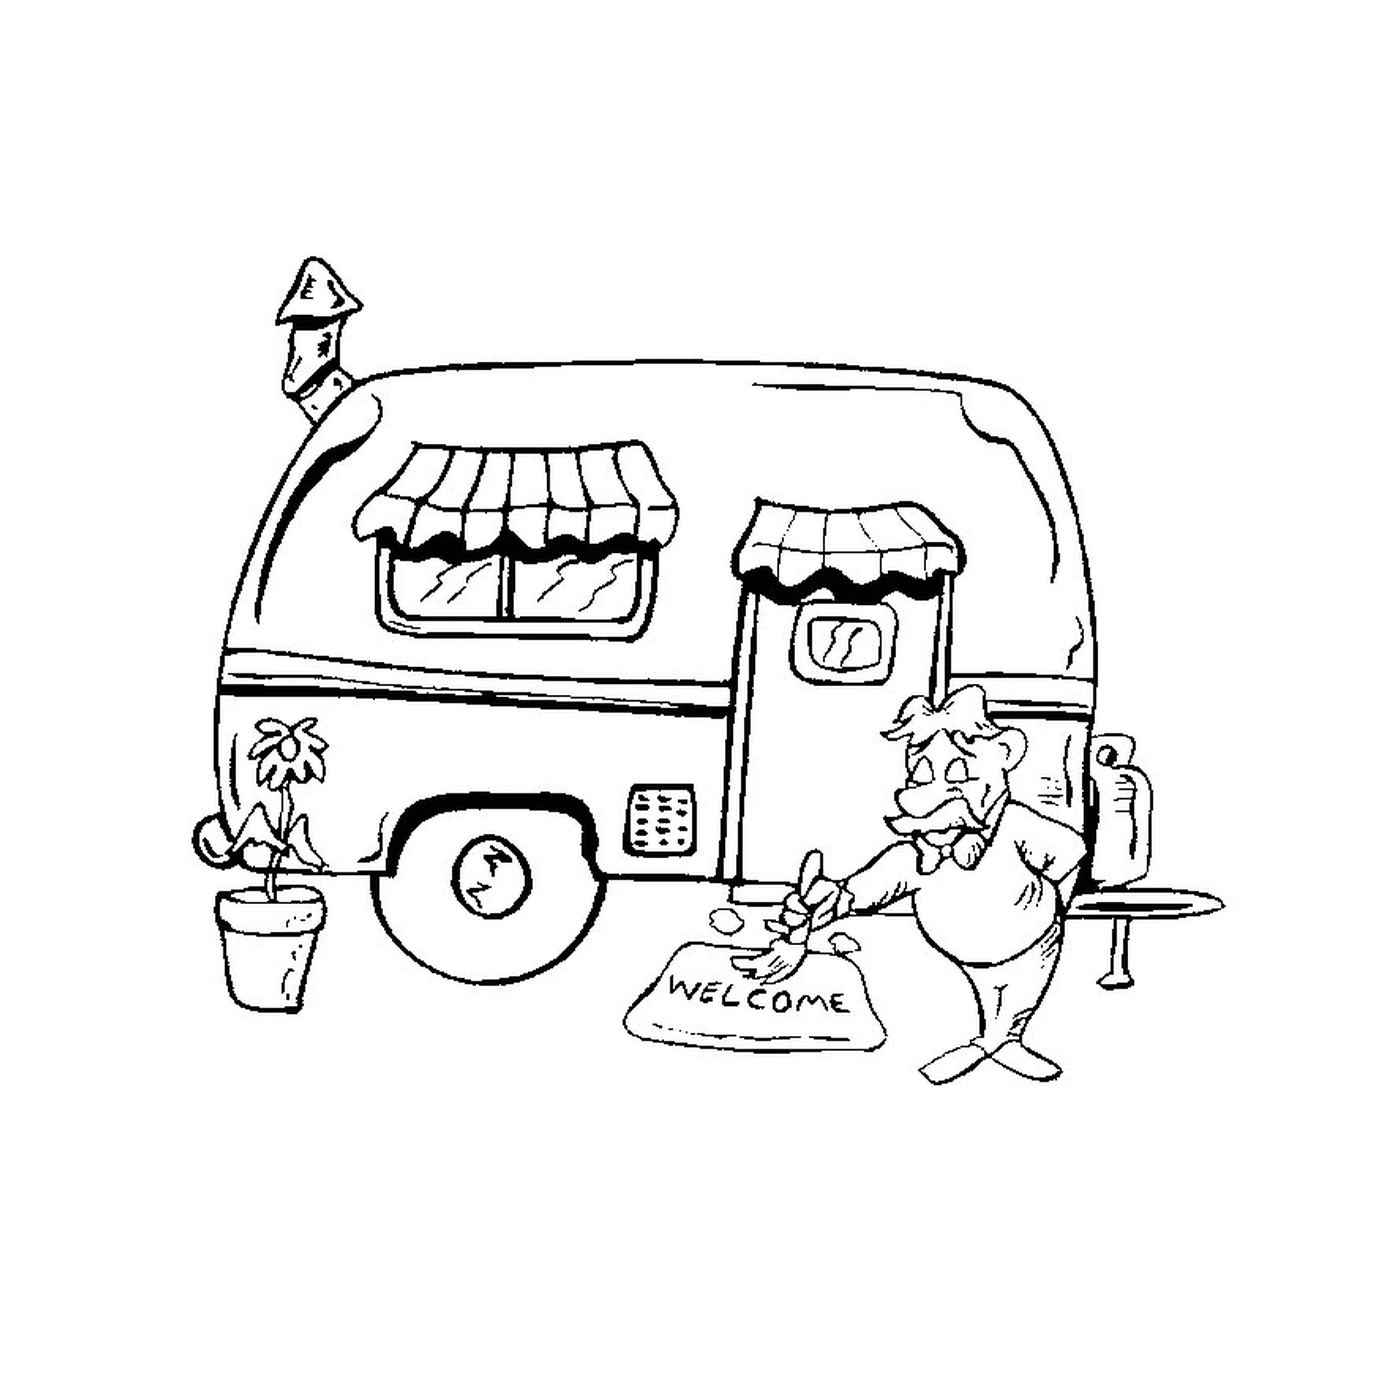  Car and caravan 